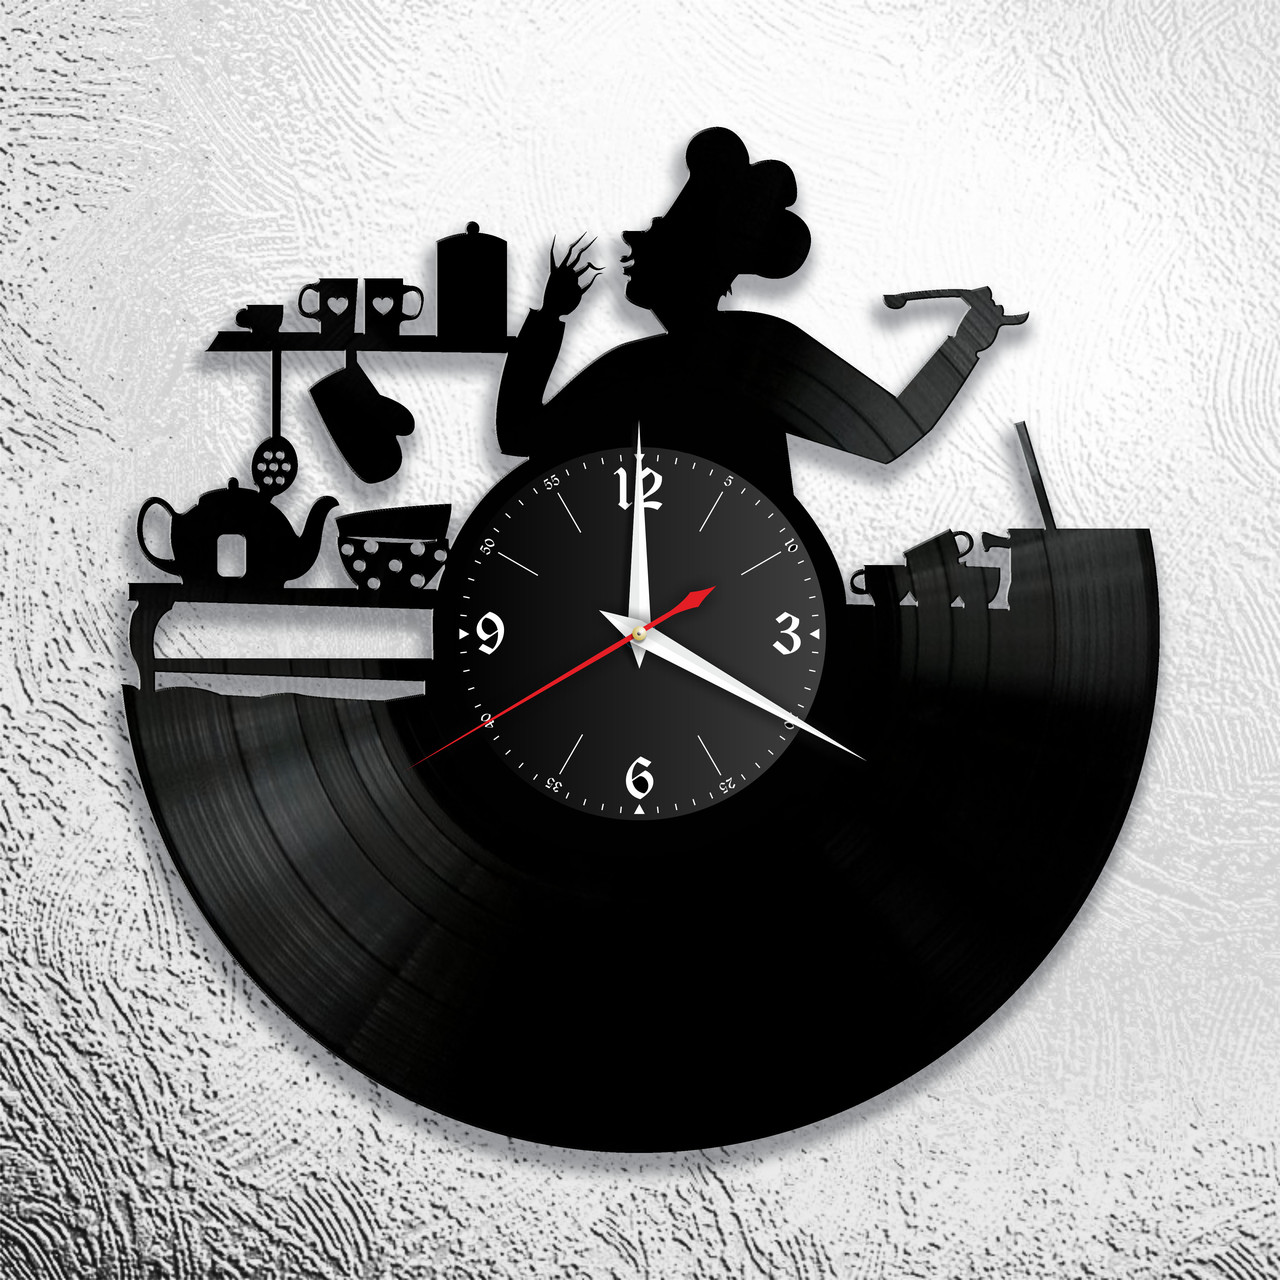 Часы из виниловой пластинки "Кухня" Версия 3